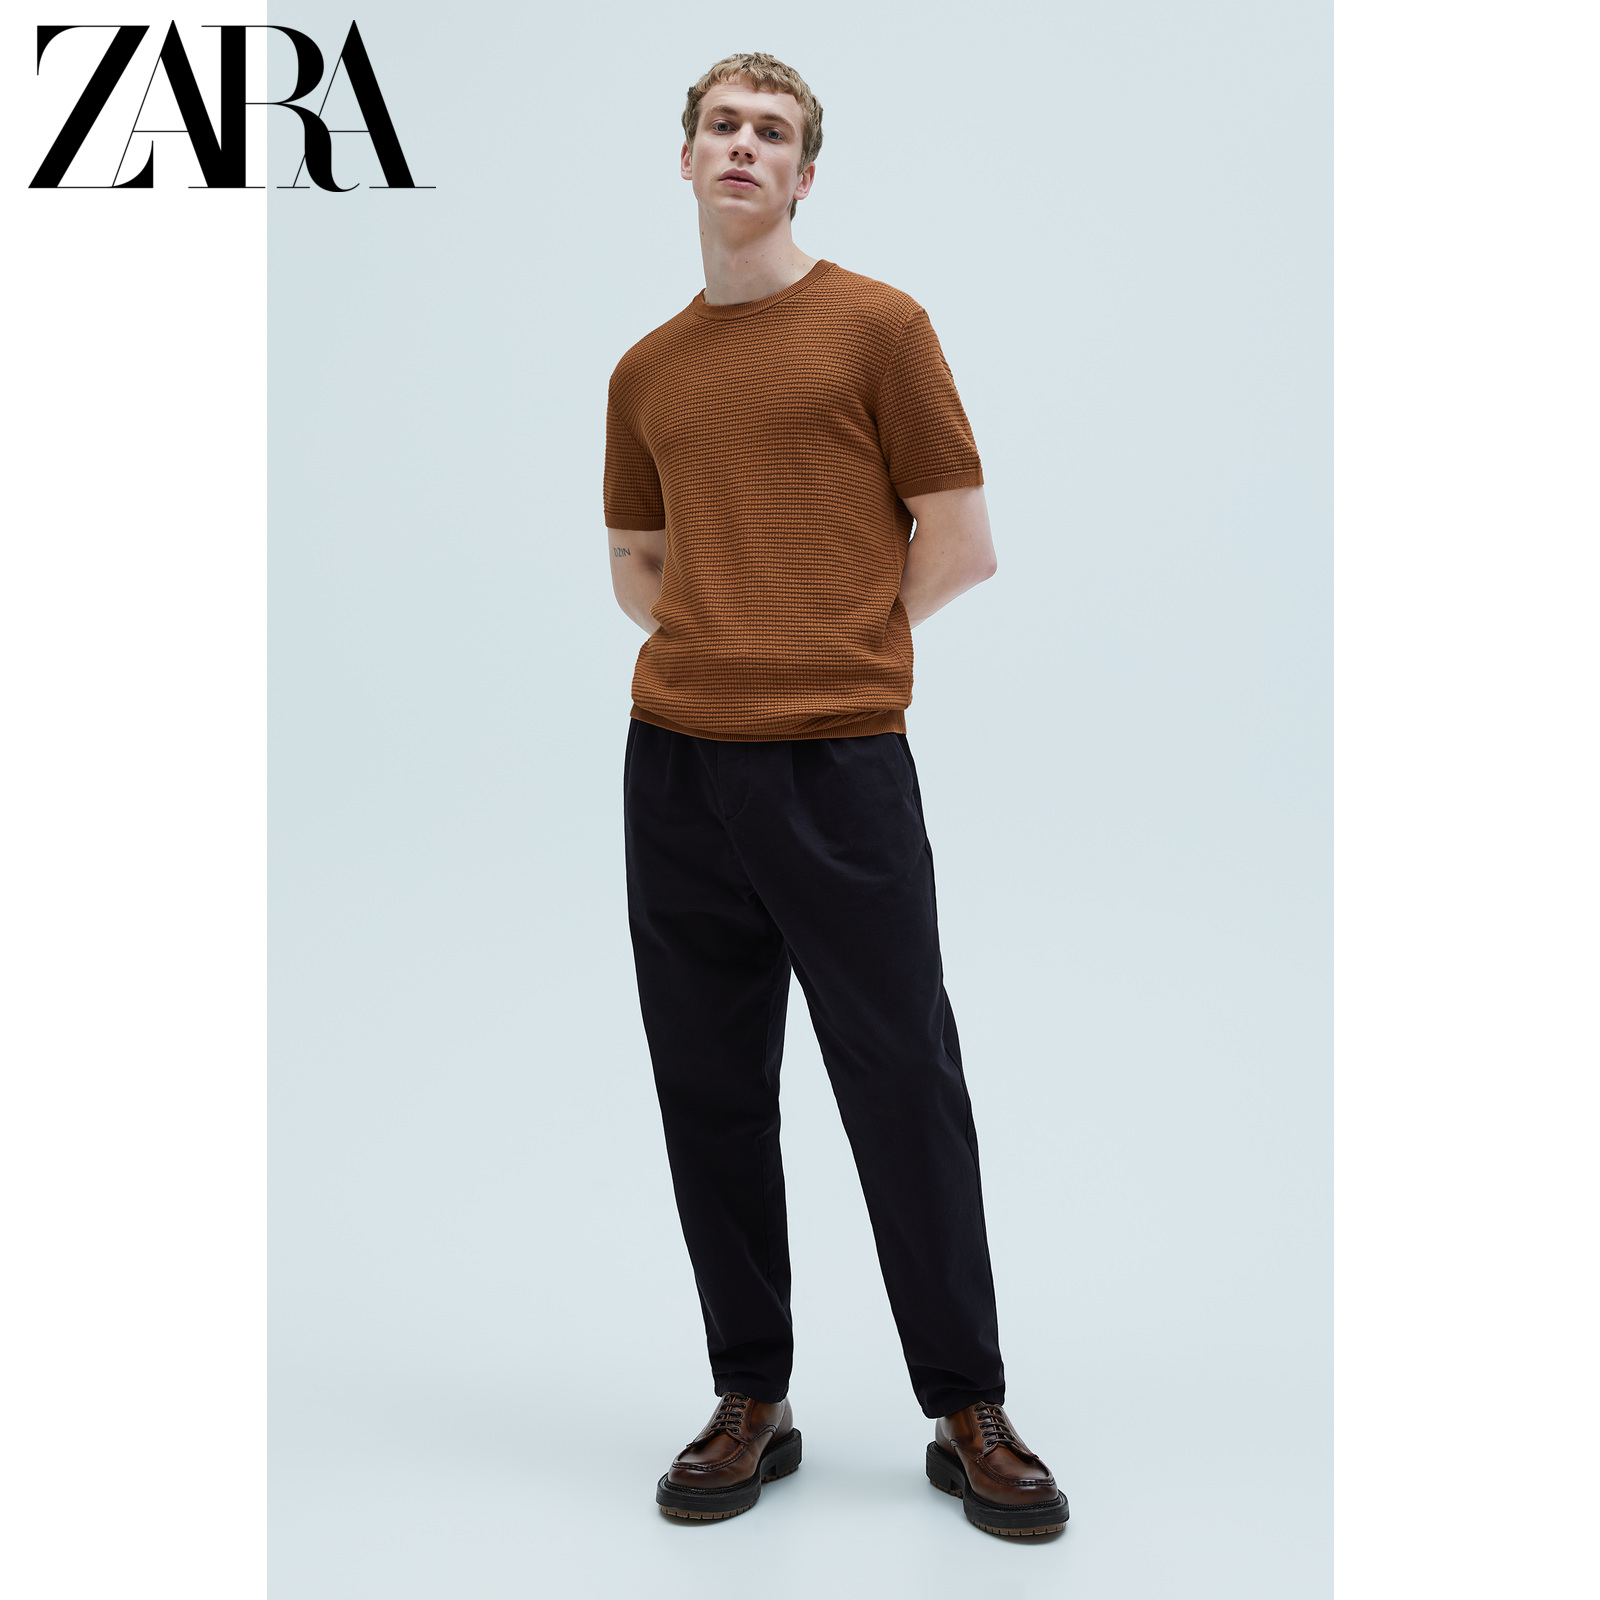 ZARA 男装 短袖内搭打底纹理针织T恤 03332406778,降价幅度61.8%